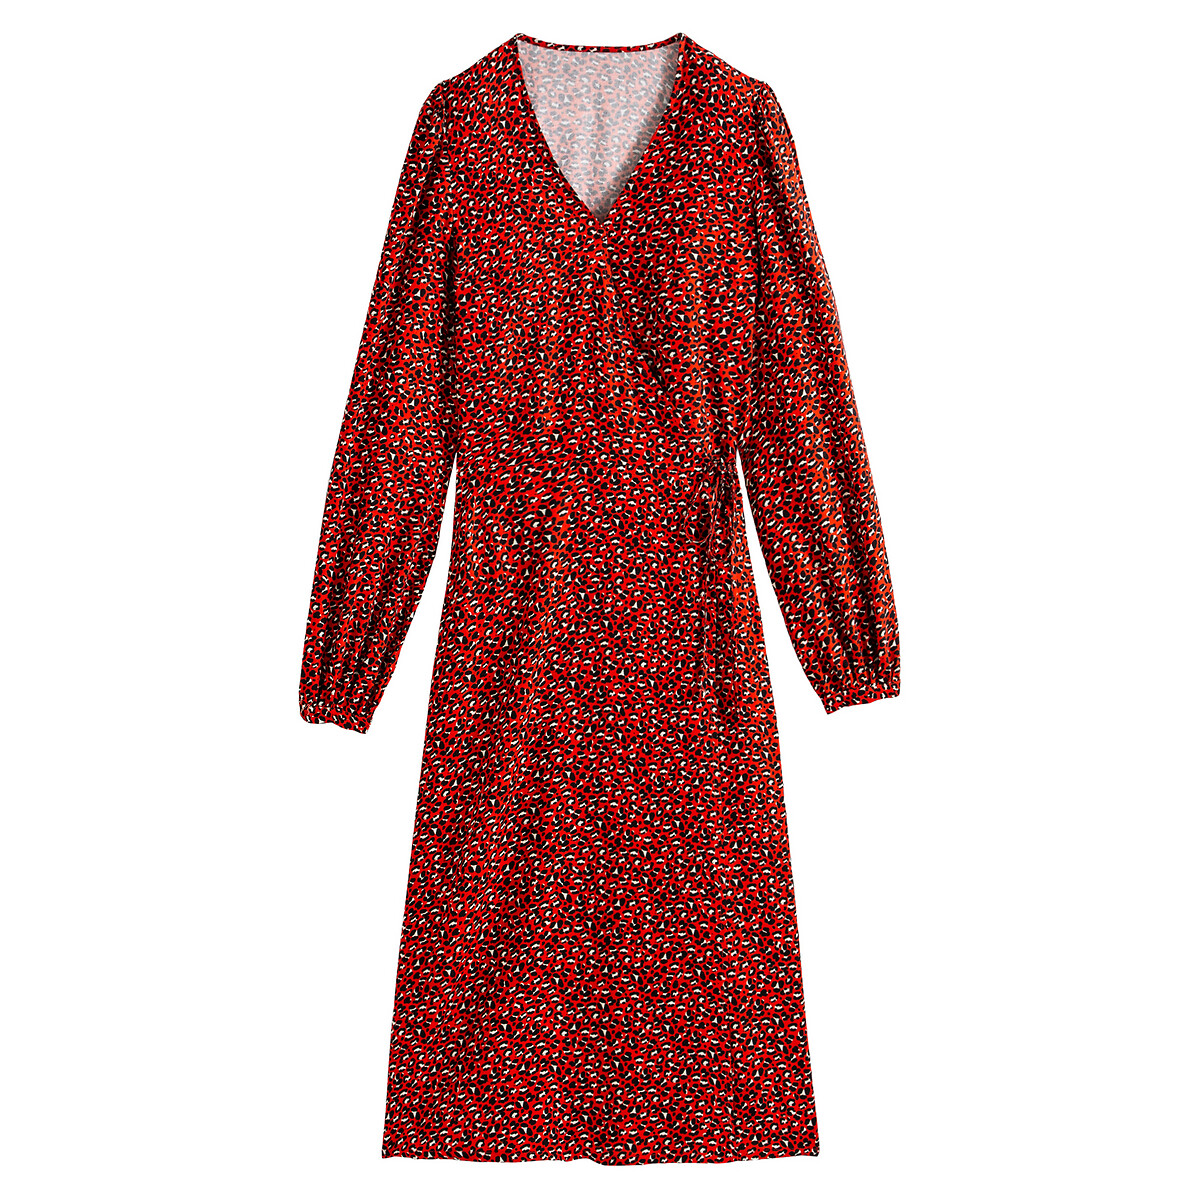 Платье LaRedoute Длинное с запахом с анималистичным принтом 38 (FR) - 44 (RUS) красный, размер 38 (FR) - 44 (RUS) Длинное с запахом с анималистичным принтом 38 (FR) - 44 (RUS) красный - фото 5